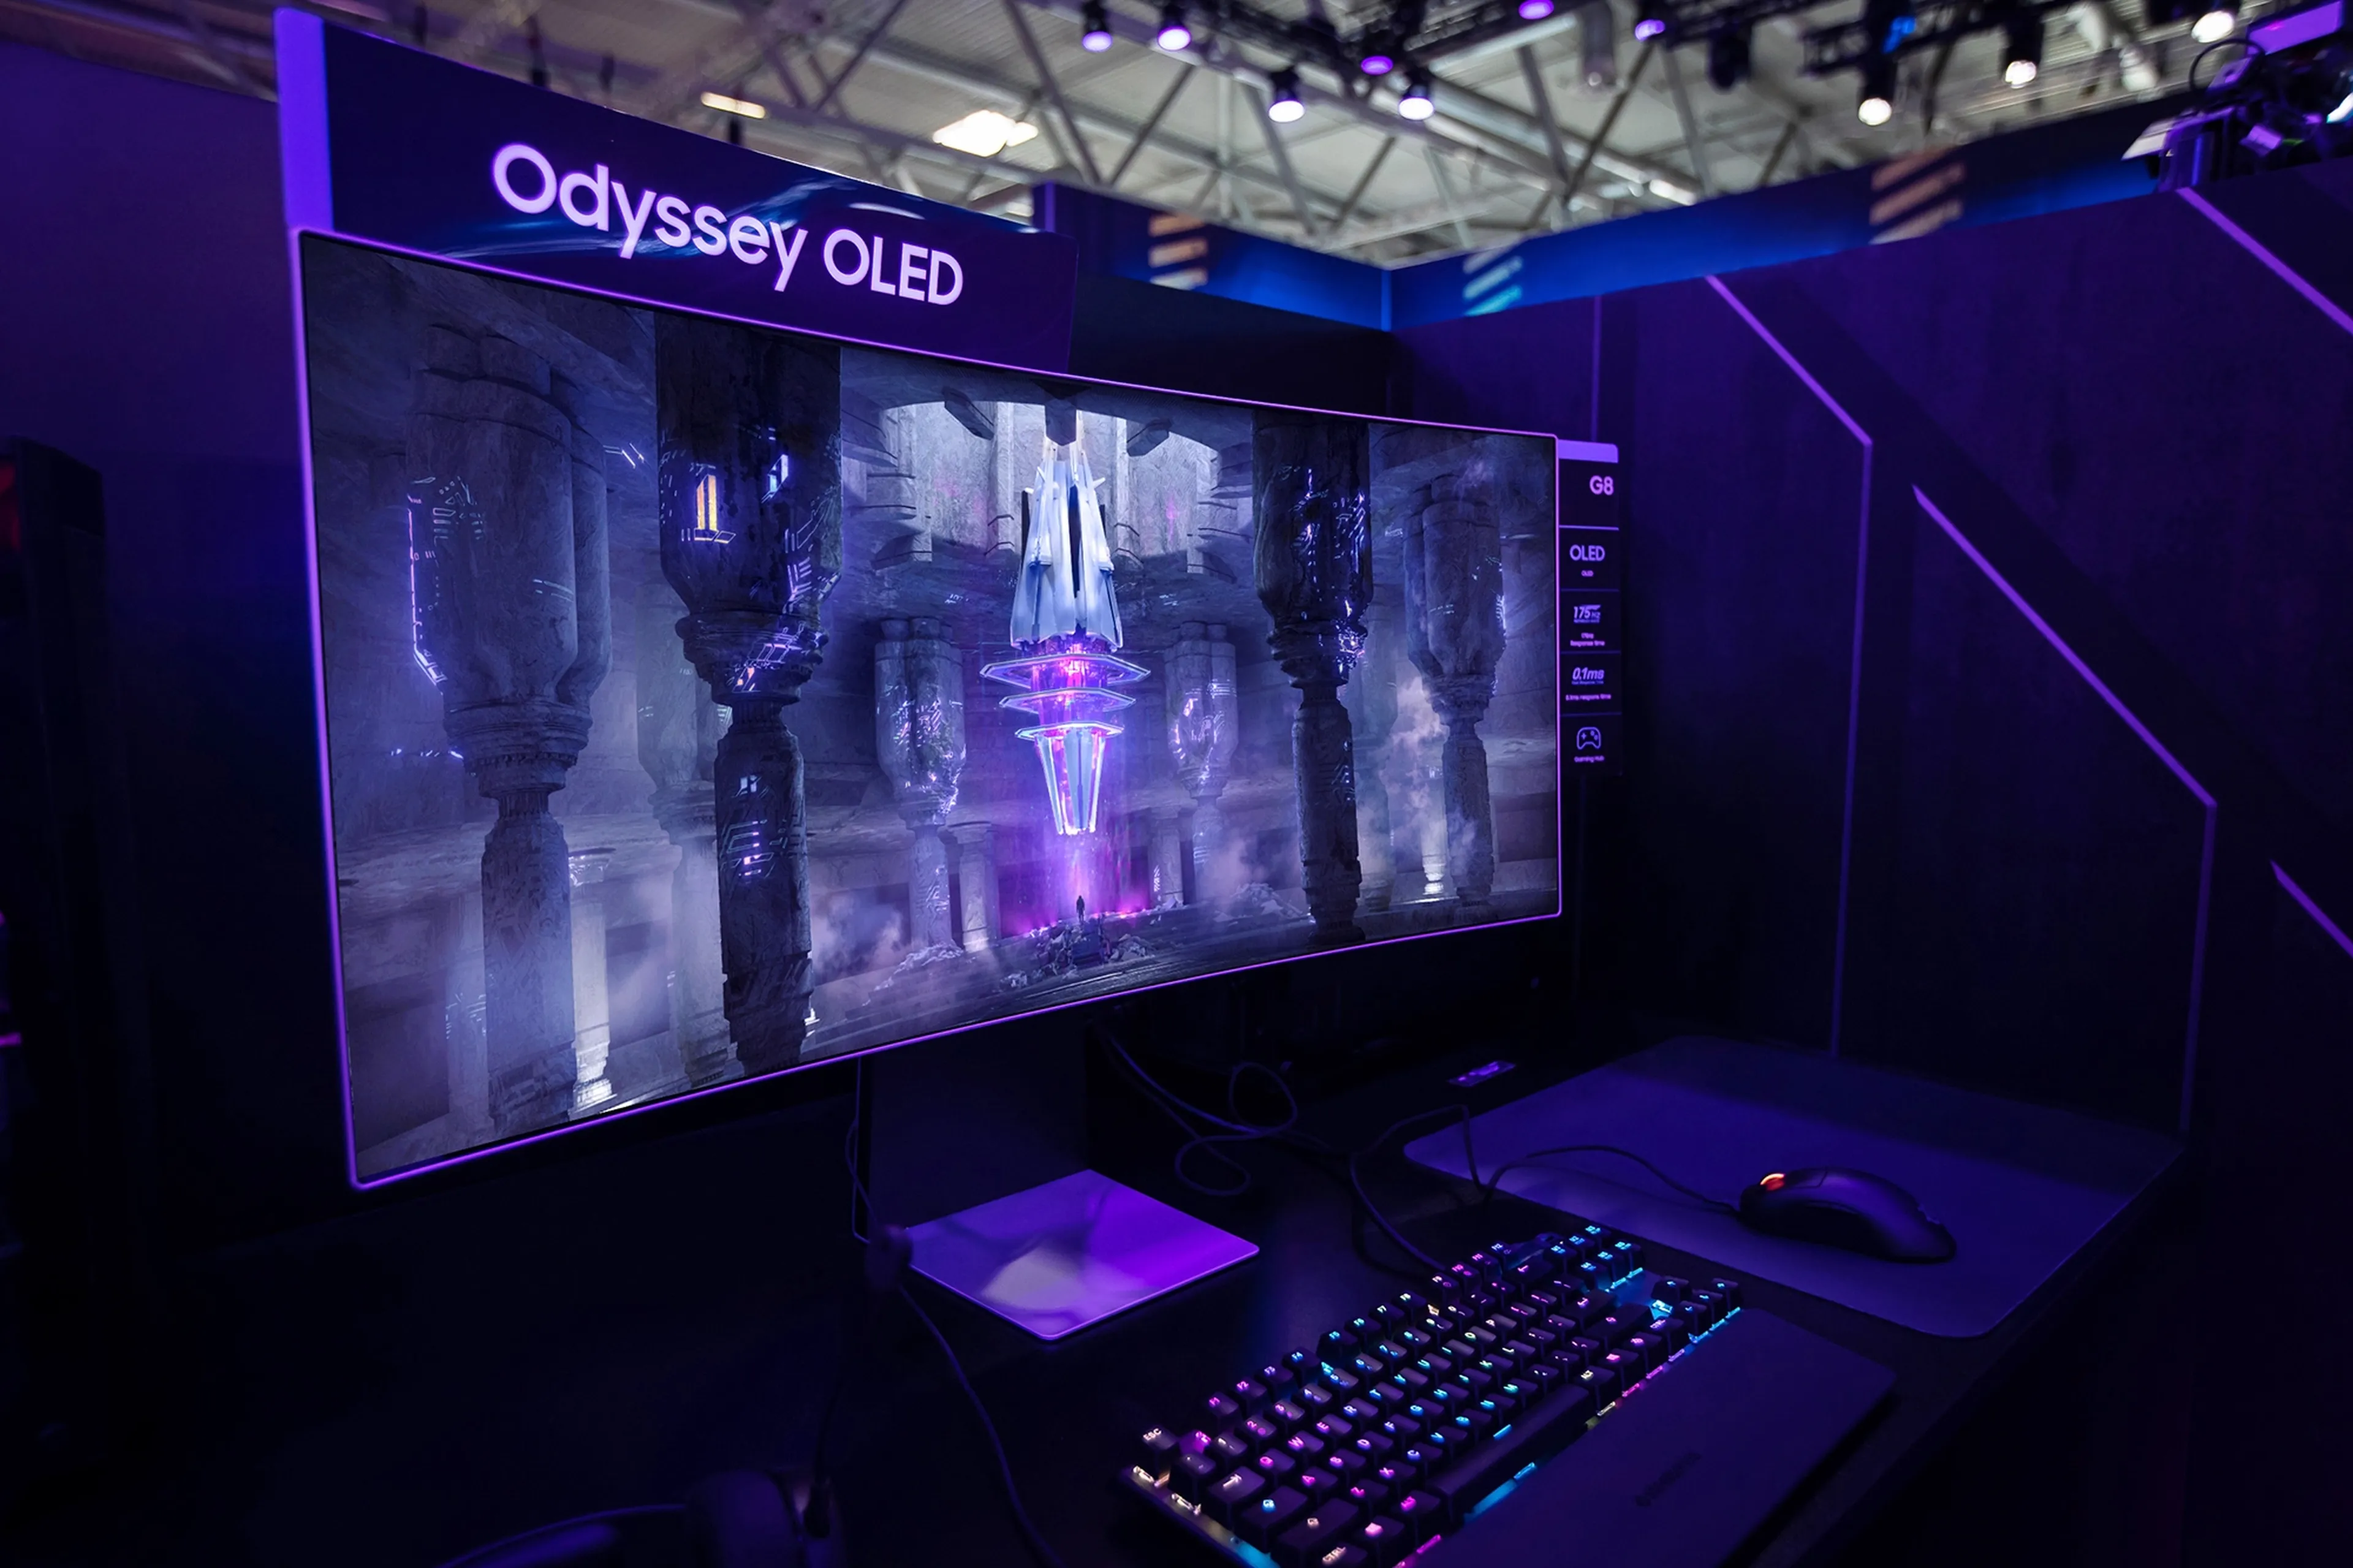 Odyssey OLED G8